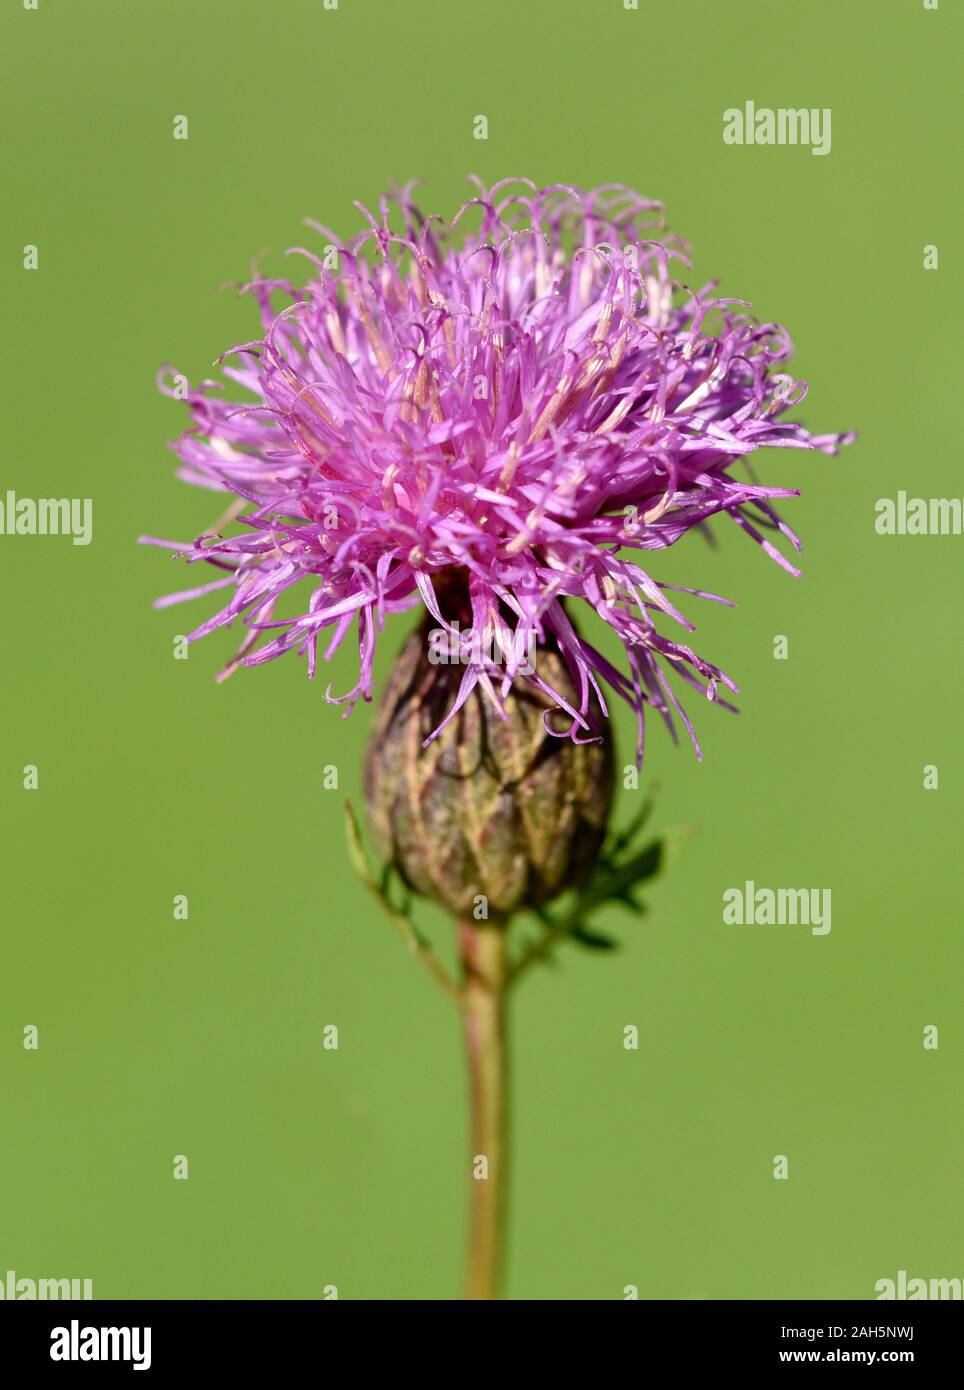 Faerberscharte, Serratula tinctoria, ist eine wichtige Heil- und Faerberpflanze mit lila Blueten und wird viel in der Medizin verwendet. The Serratula Stock Photo